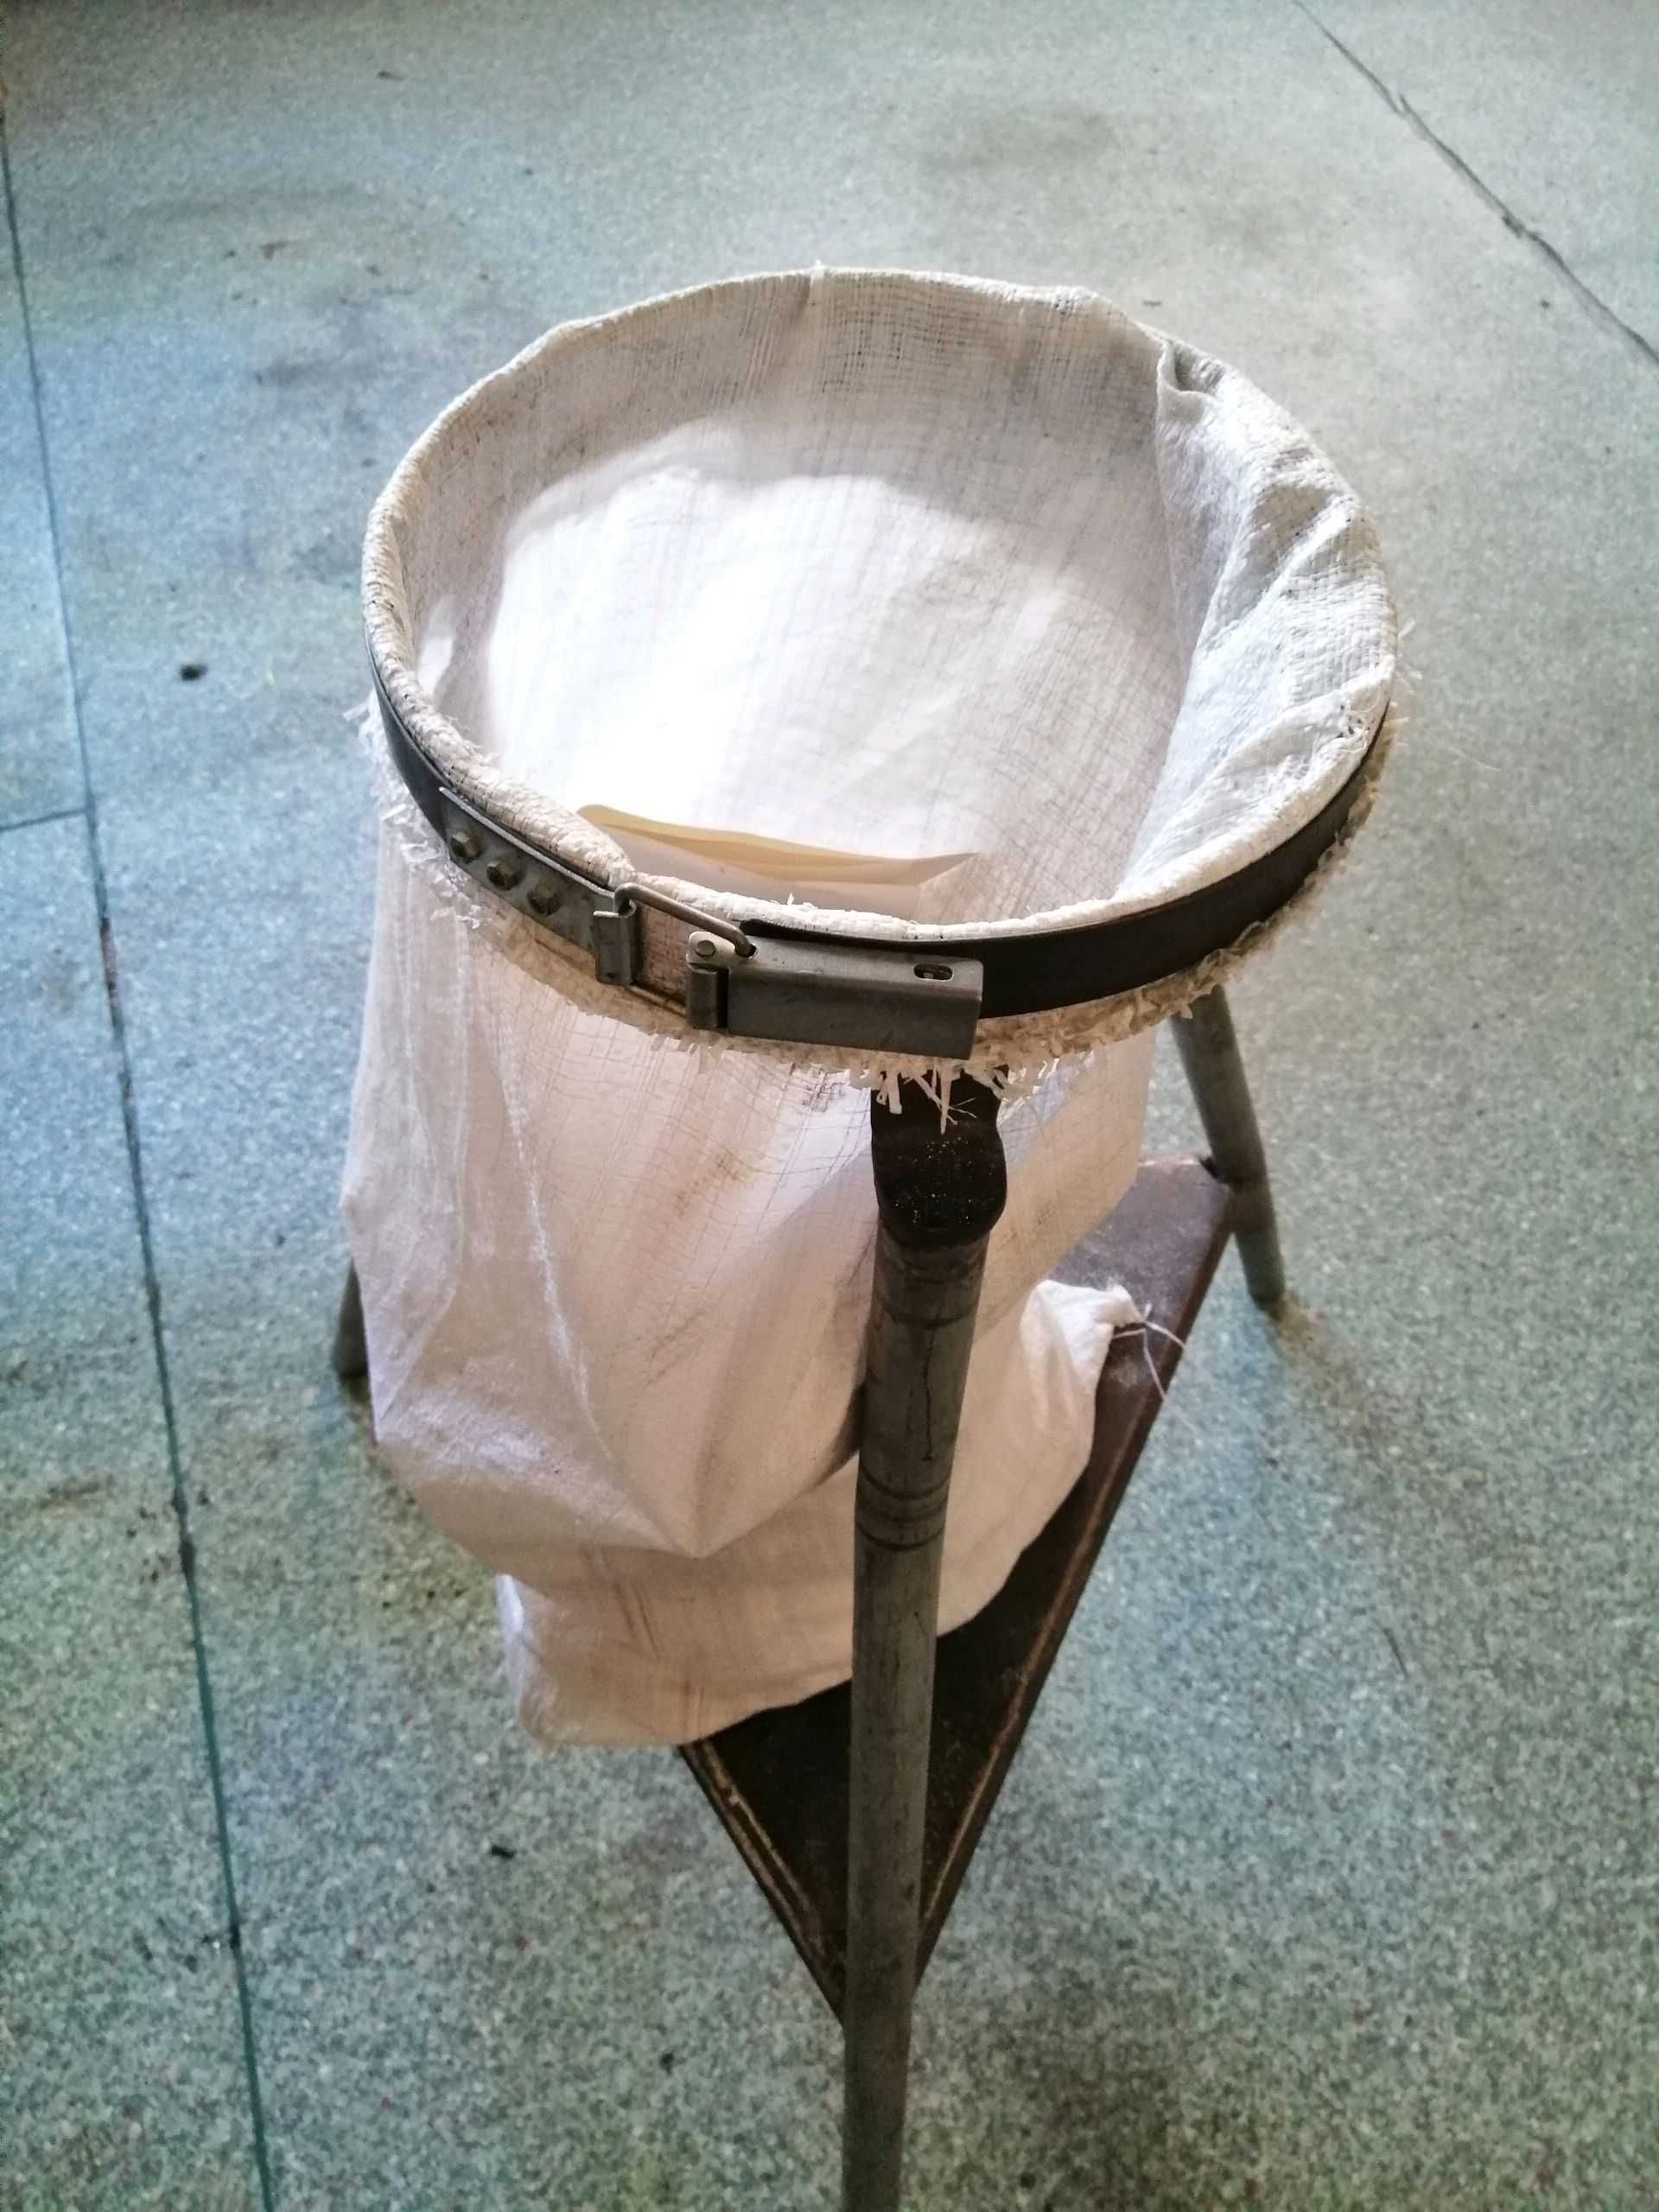 Stojak metalowy, z obręczą zaciskającą worek na odpady